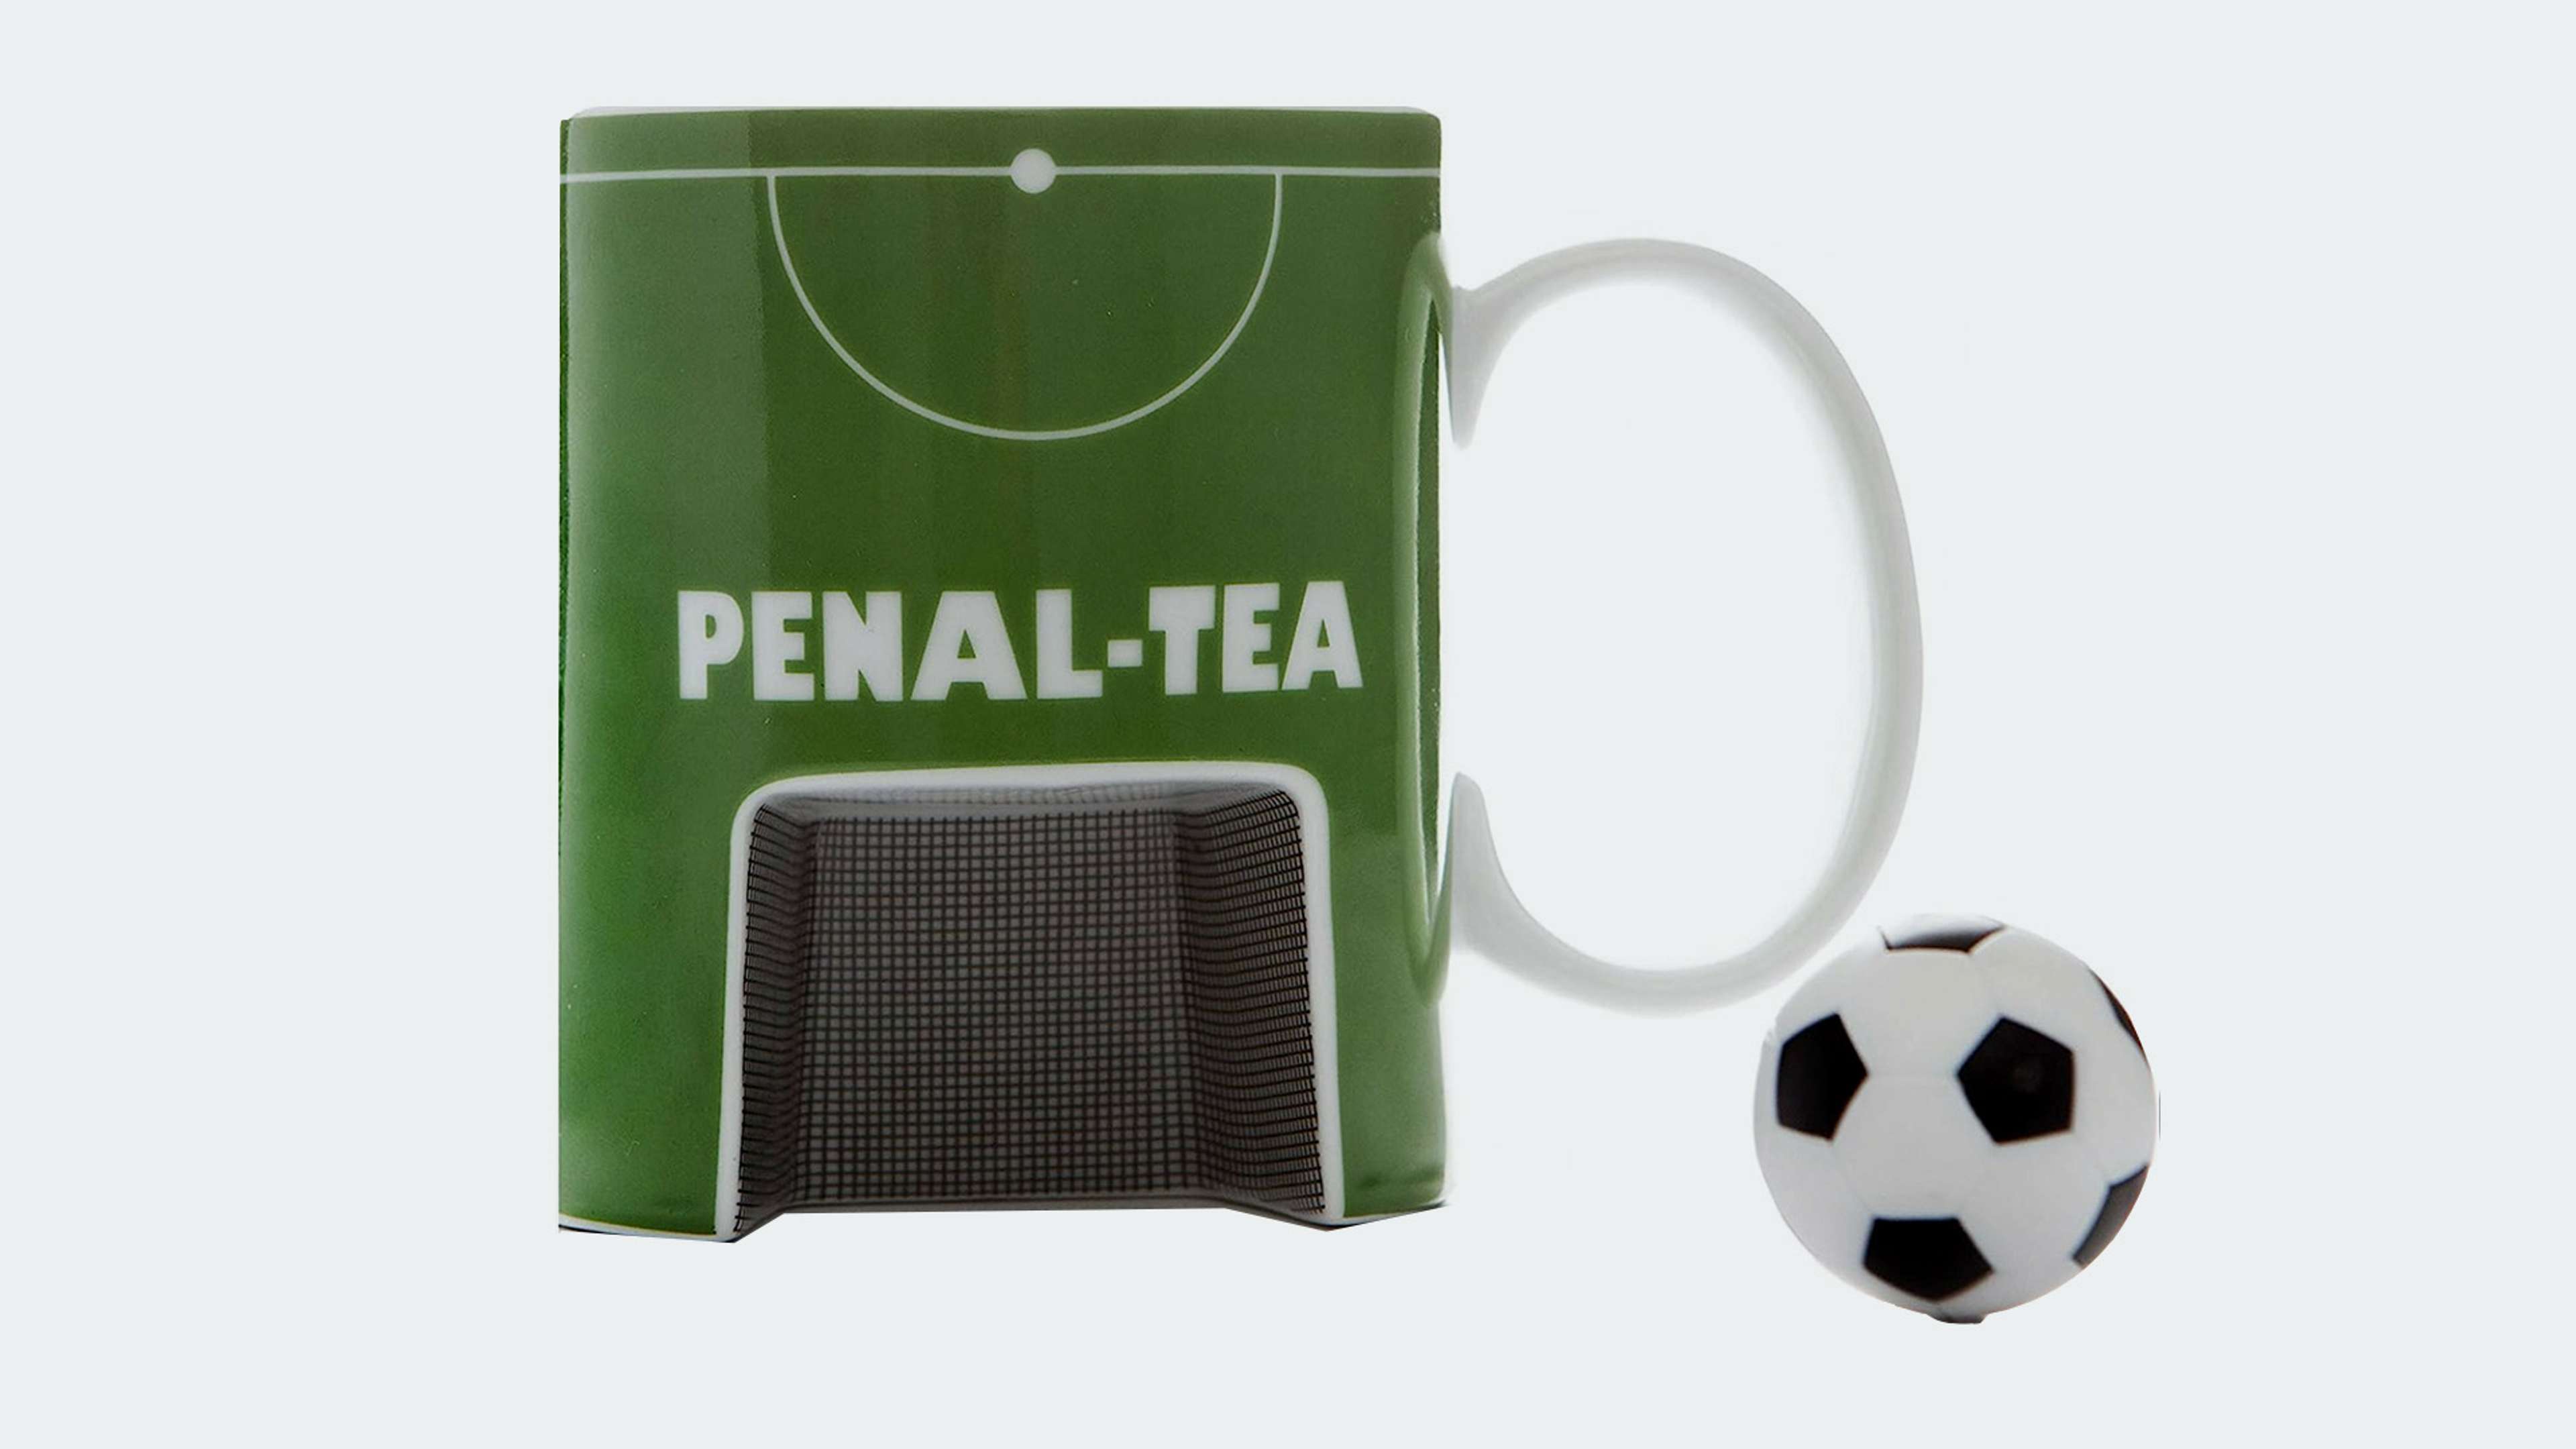 PenalTea mug